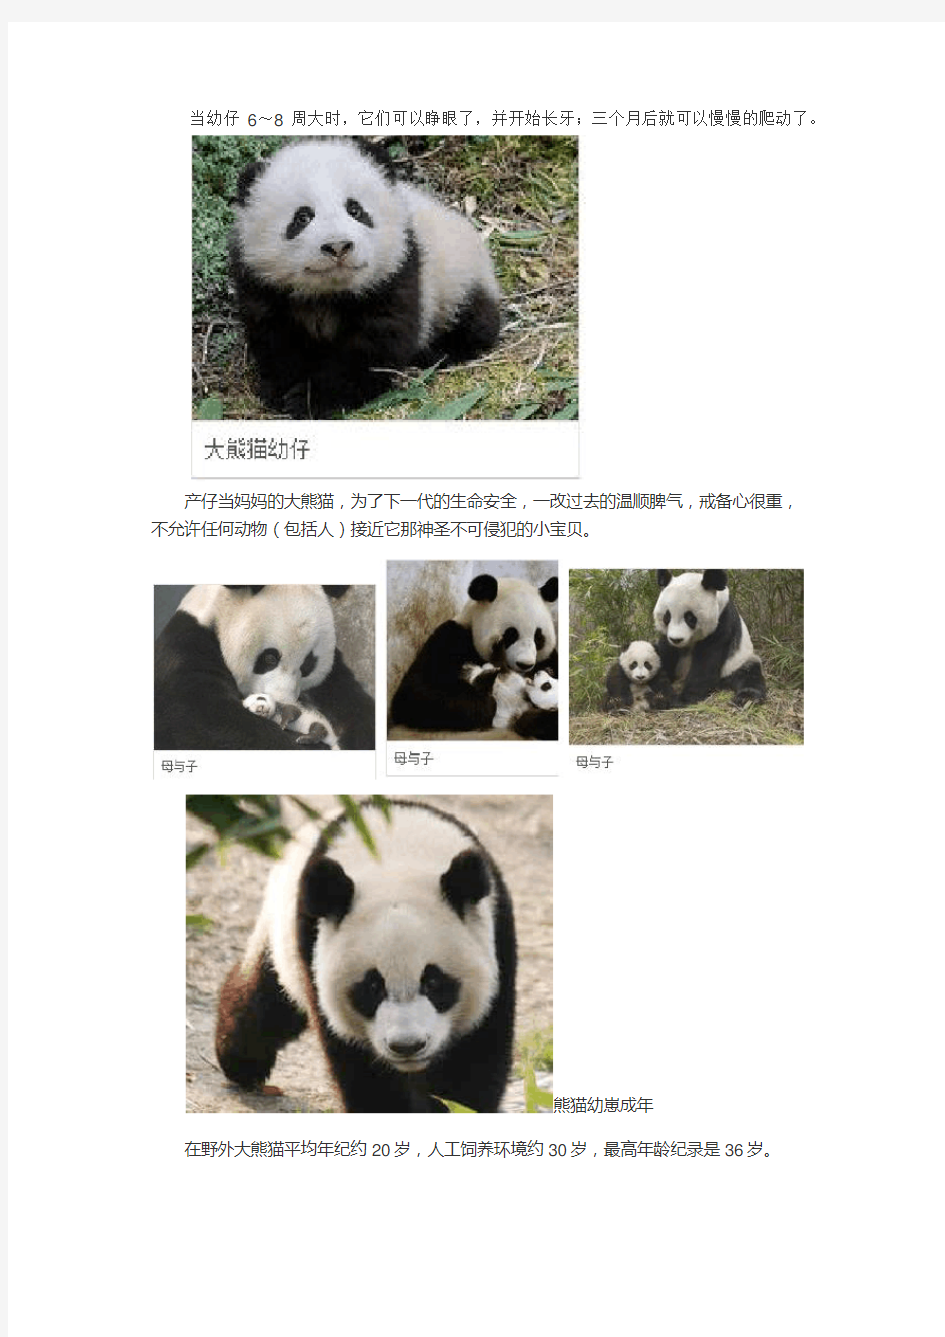 熊猫的生命周期